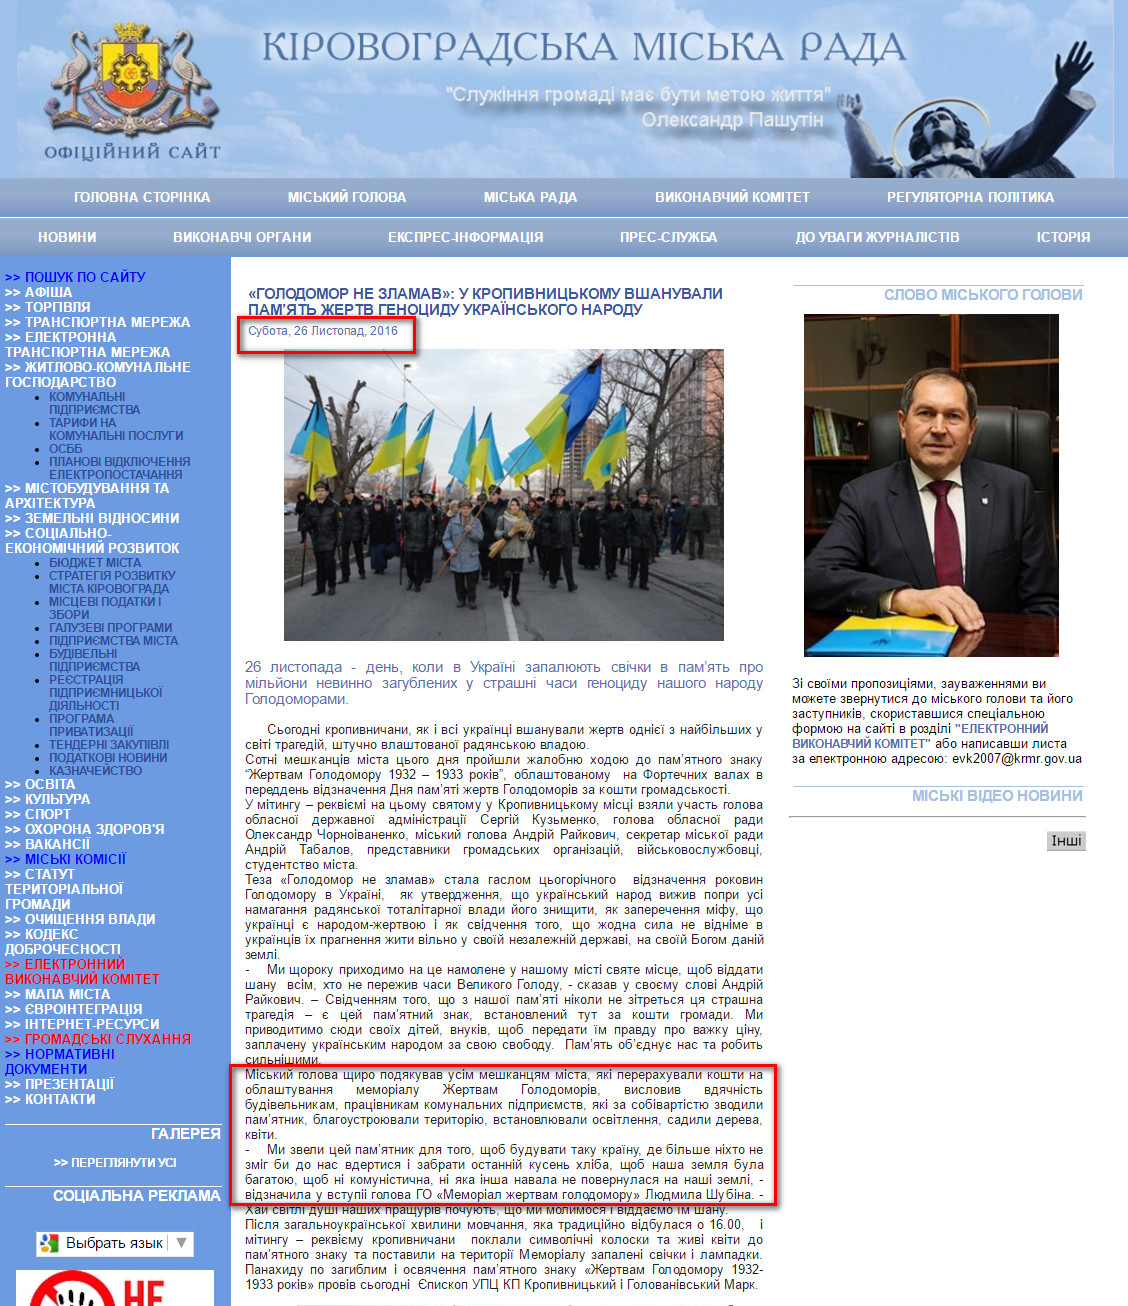 http://www.kr-rada.gov.ua/news/golodomor-ne-zlamav-261116.html